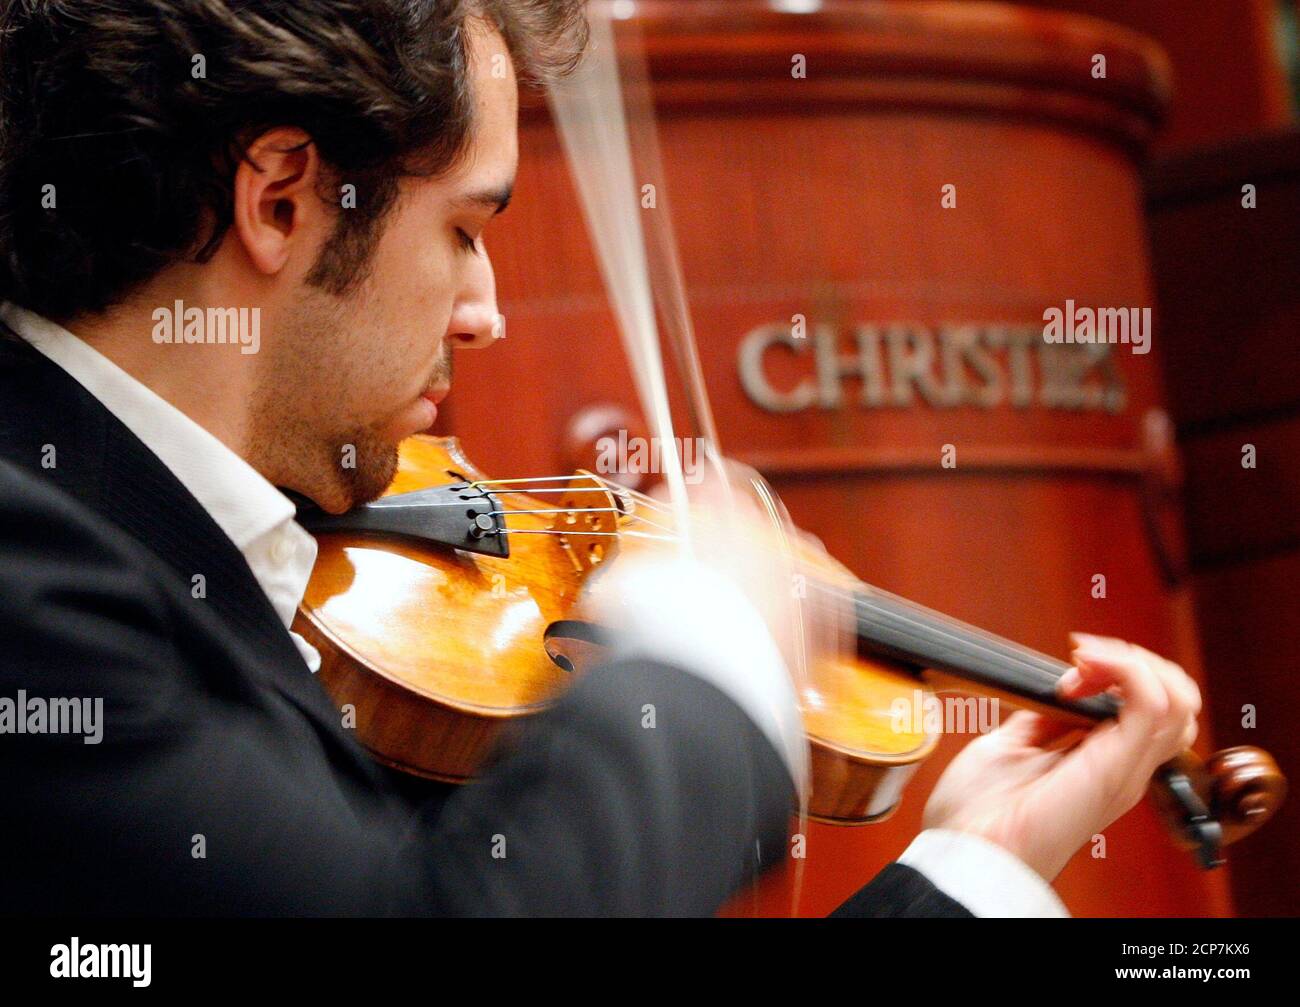 Musician Jesus Reina plays a Stradivarius violin known as 